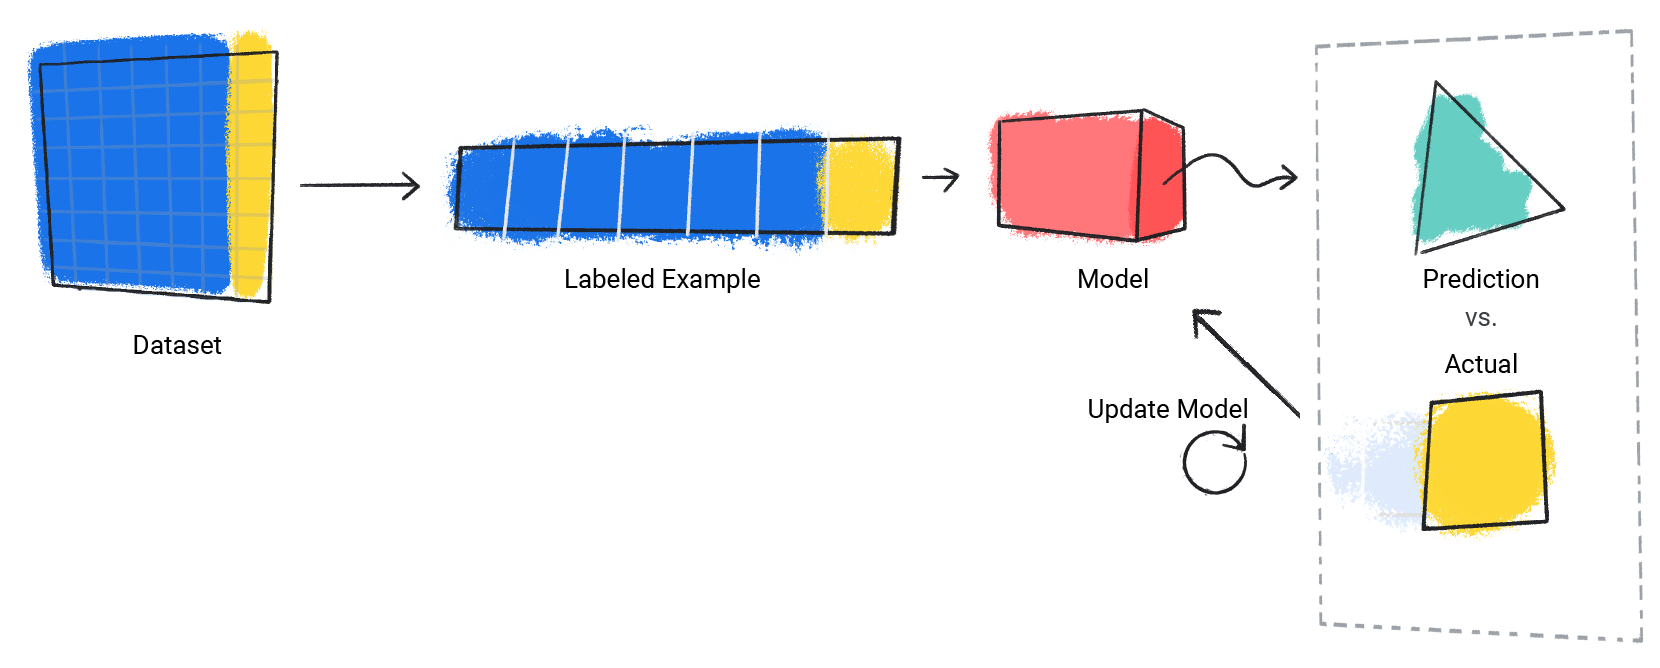 תמונה של מודל שחוזרת על תהליך החיזוי שלו לעומת הערך בפועל.